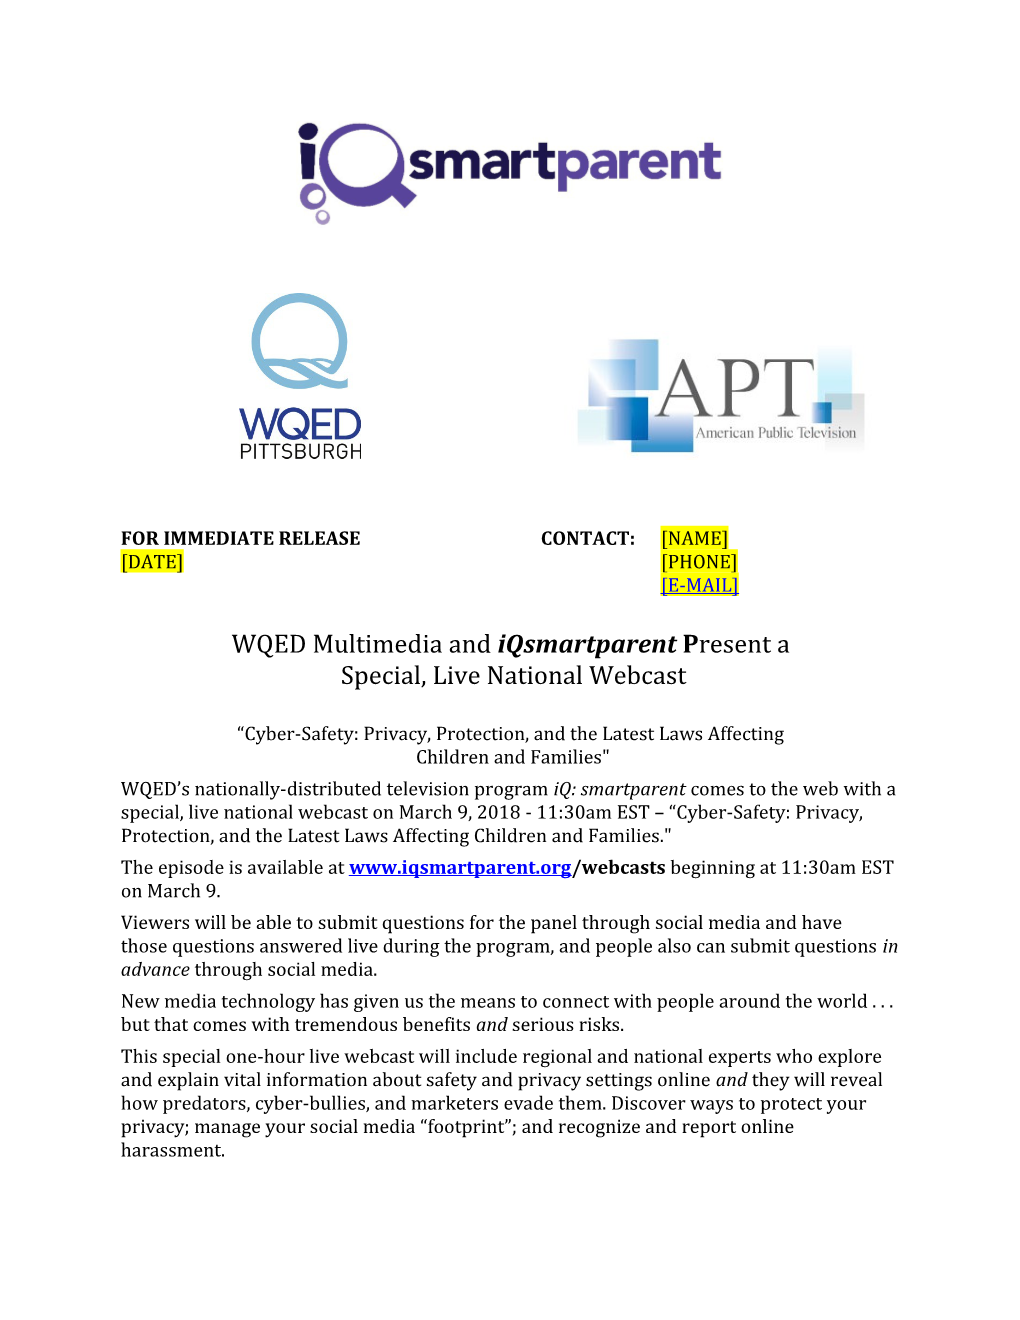 WQED Multimedia and Iqsmartparent Present A